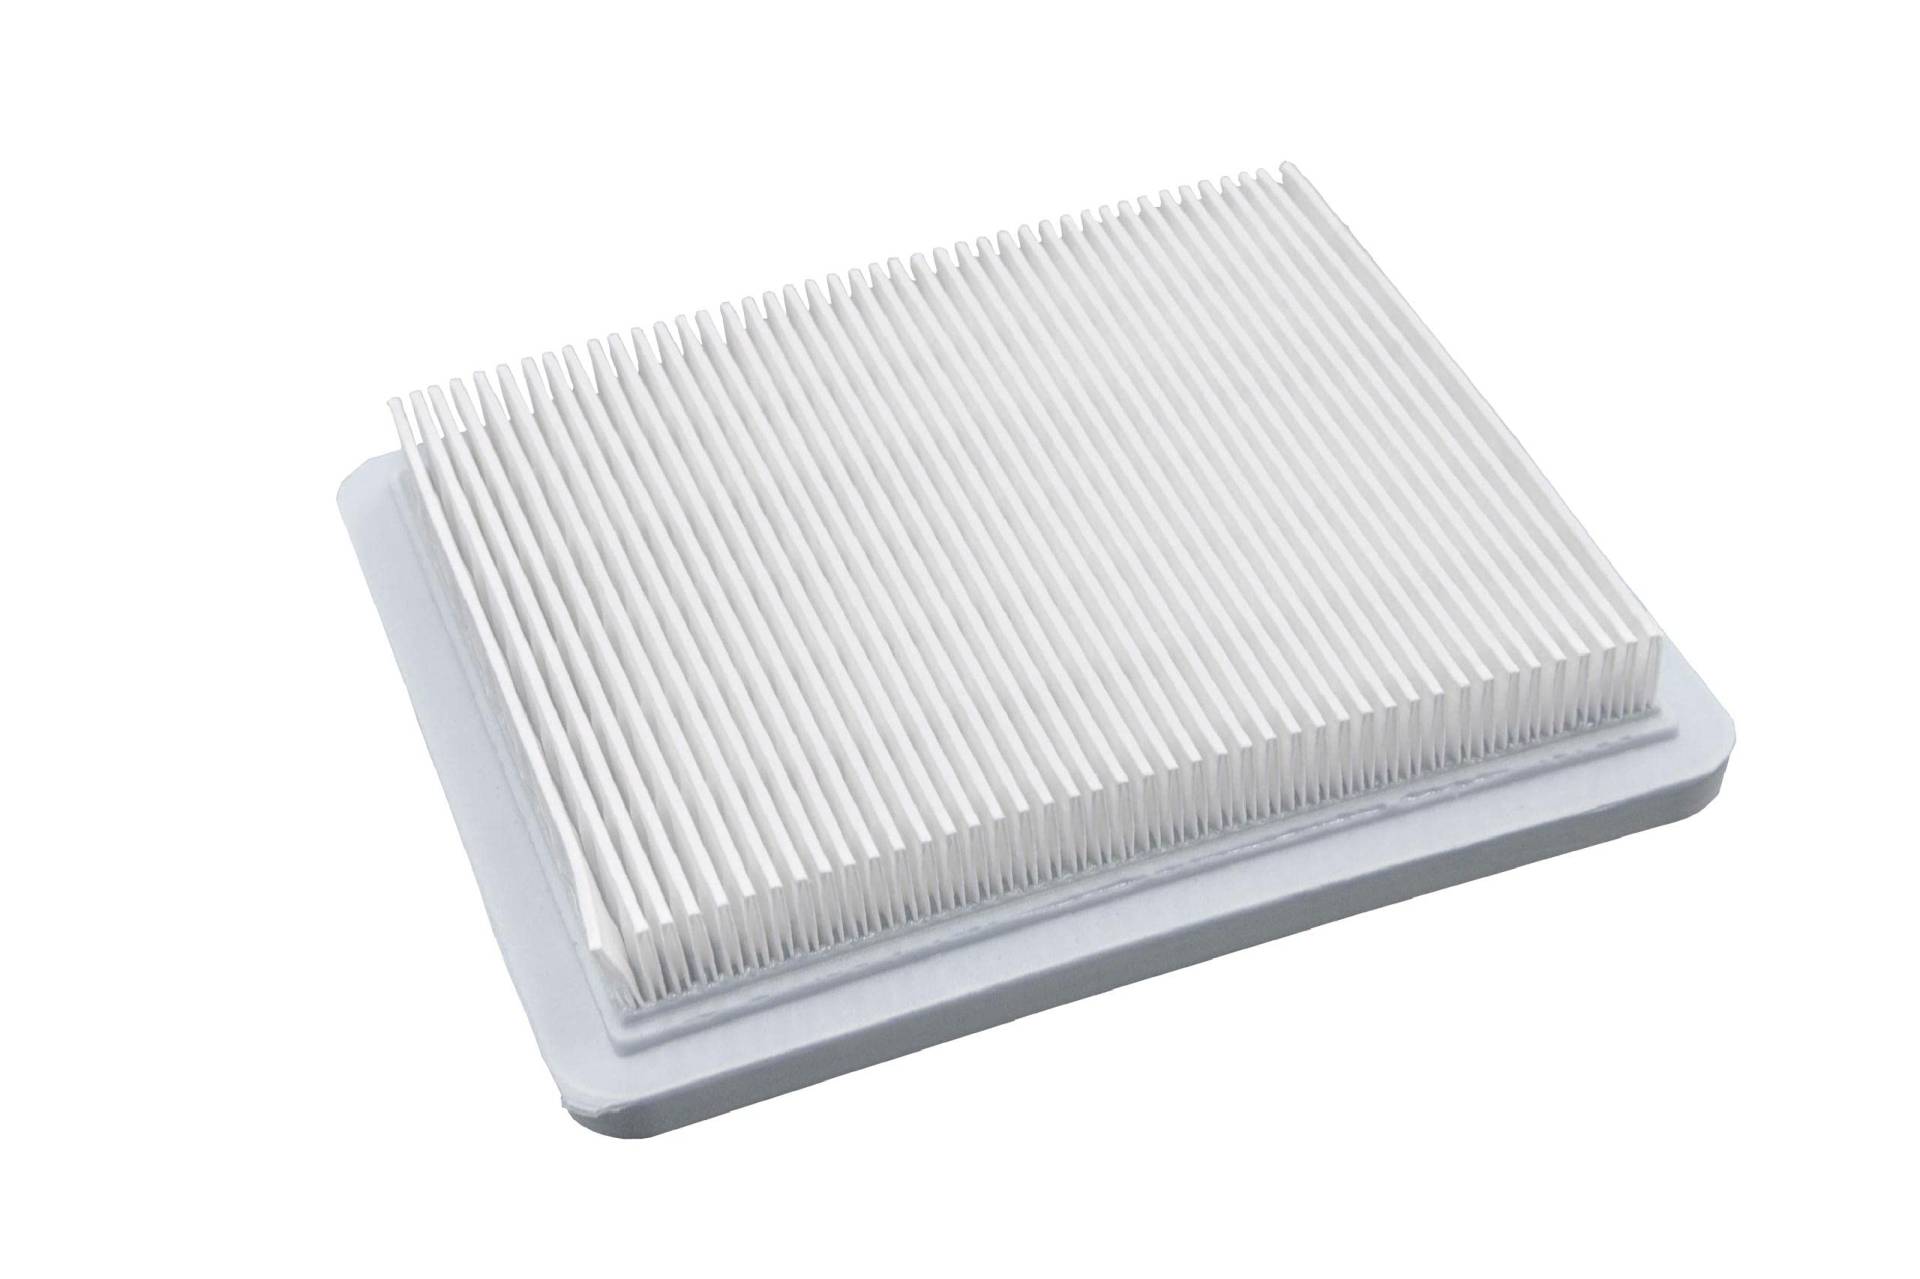 vhbw Papier-Luftfilter Ersatzfilter kompatibel mit Briggs & Stratton 124H00, 124K00, 124L00, 124600 Rasenmäher, 13,2 x 11,5 x 2,1 cm, Weiß von vhbw